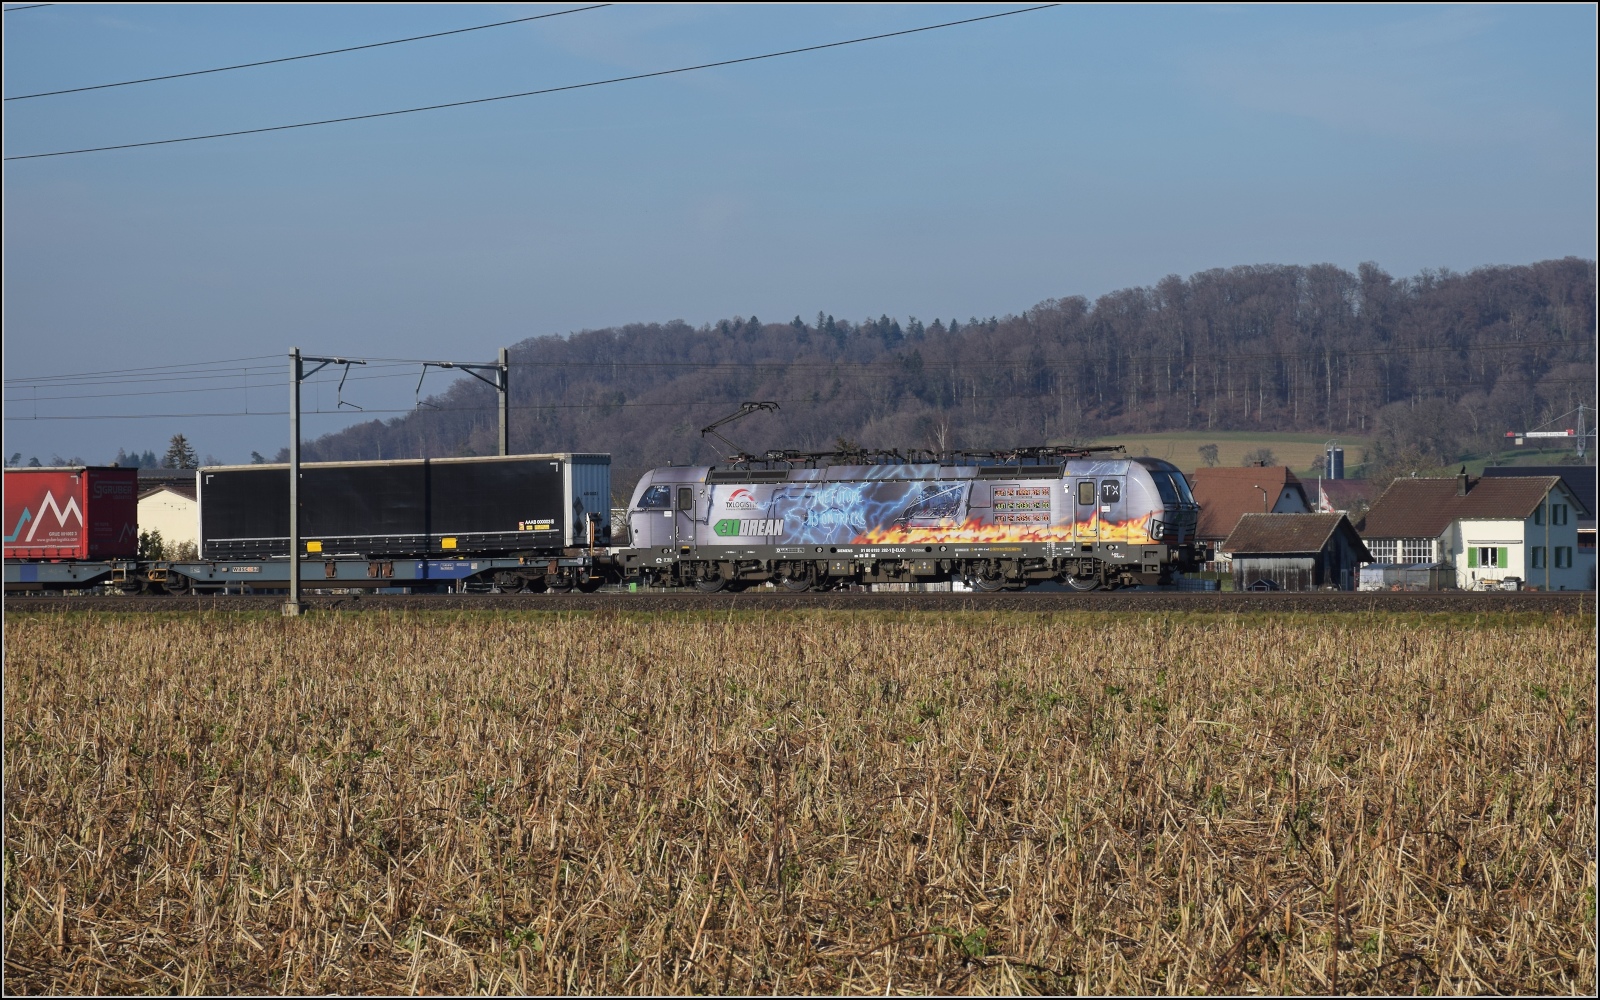 Am fast dauerverschlossenen Bahnübergang.

193 282 der ELL mit der Message 'The future is on tracks' und einer Klimauhr in Hendschiken. Februar 2023.